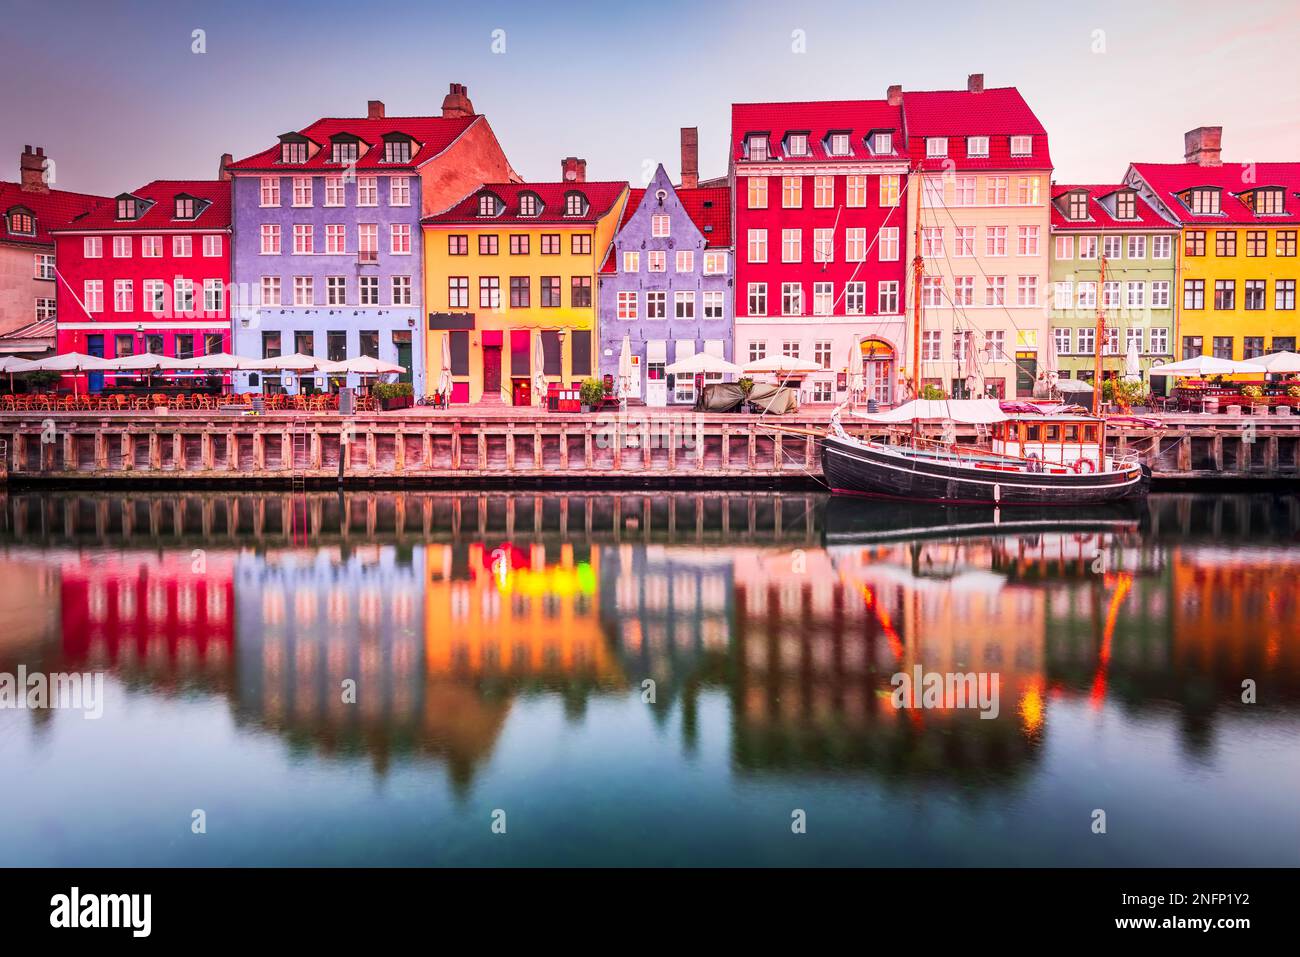 Copenhague, Dinamarca. Nyhavn, el icónico canal de Kobenhavn, refleja edificios coloridos y farolas brillantes en el crepúsculo, creando un pintoresco touris Foto de stock